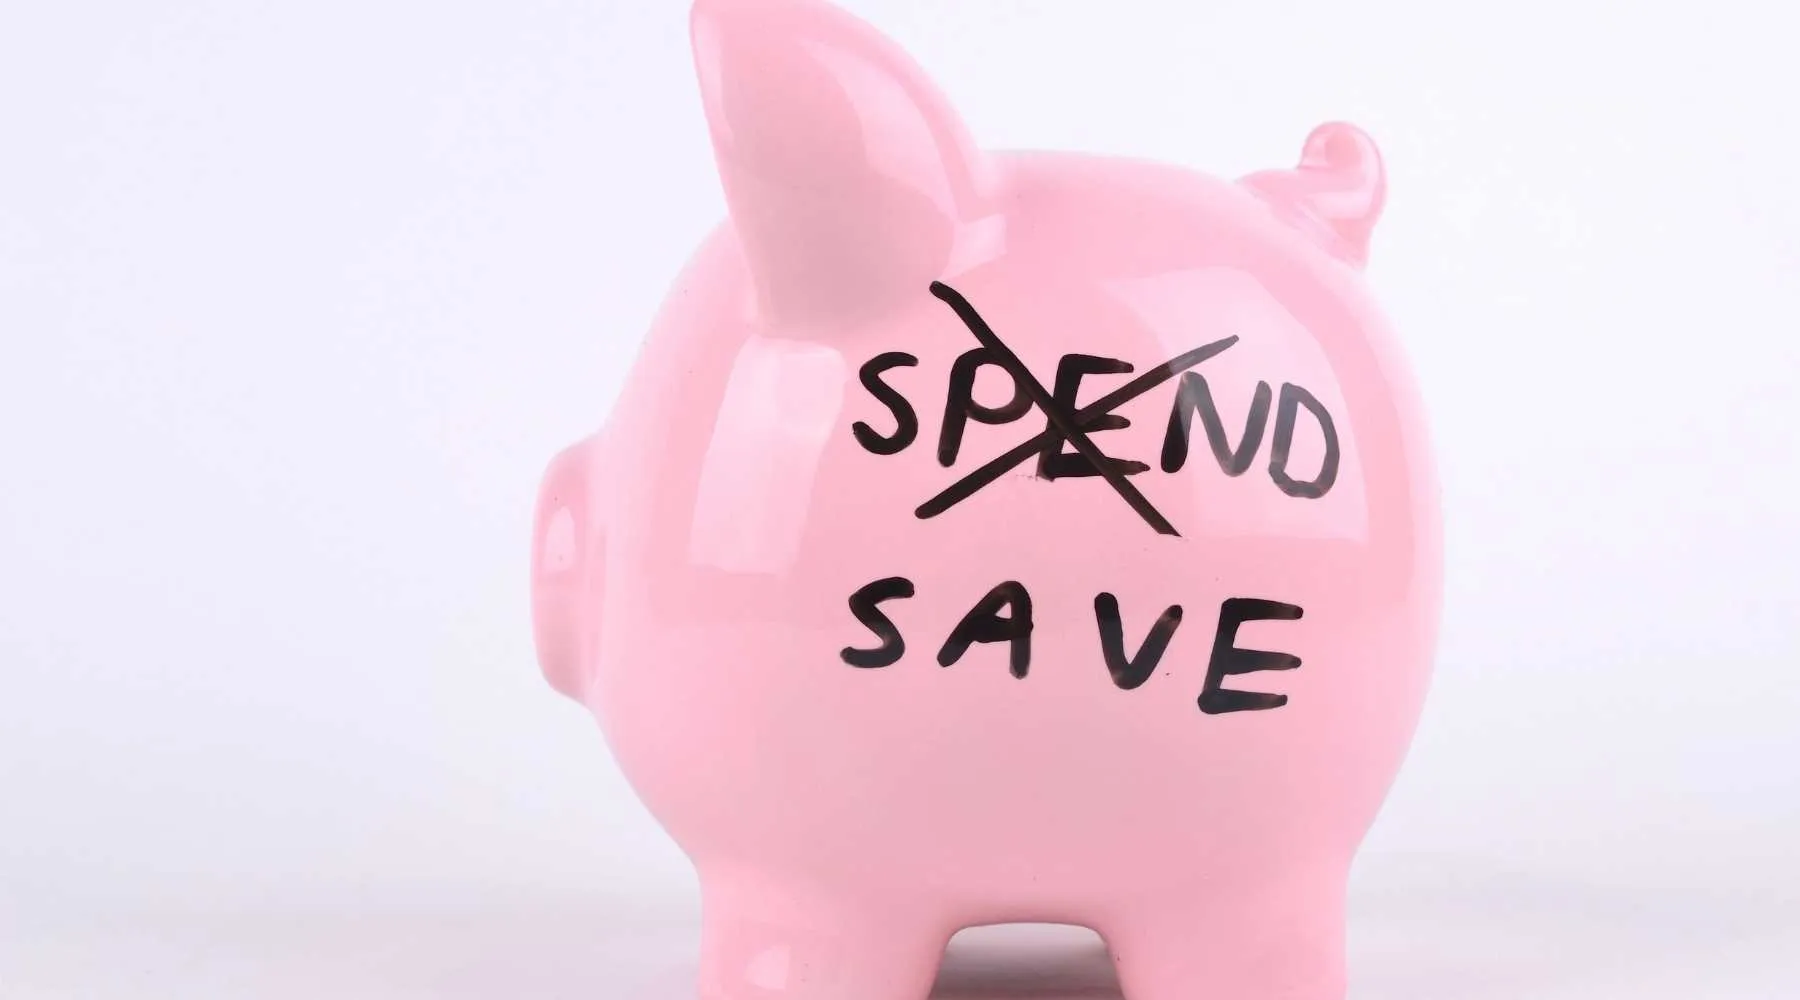 Spend less piggy bank_Canva_1800x1000